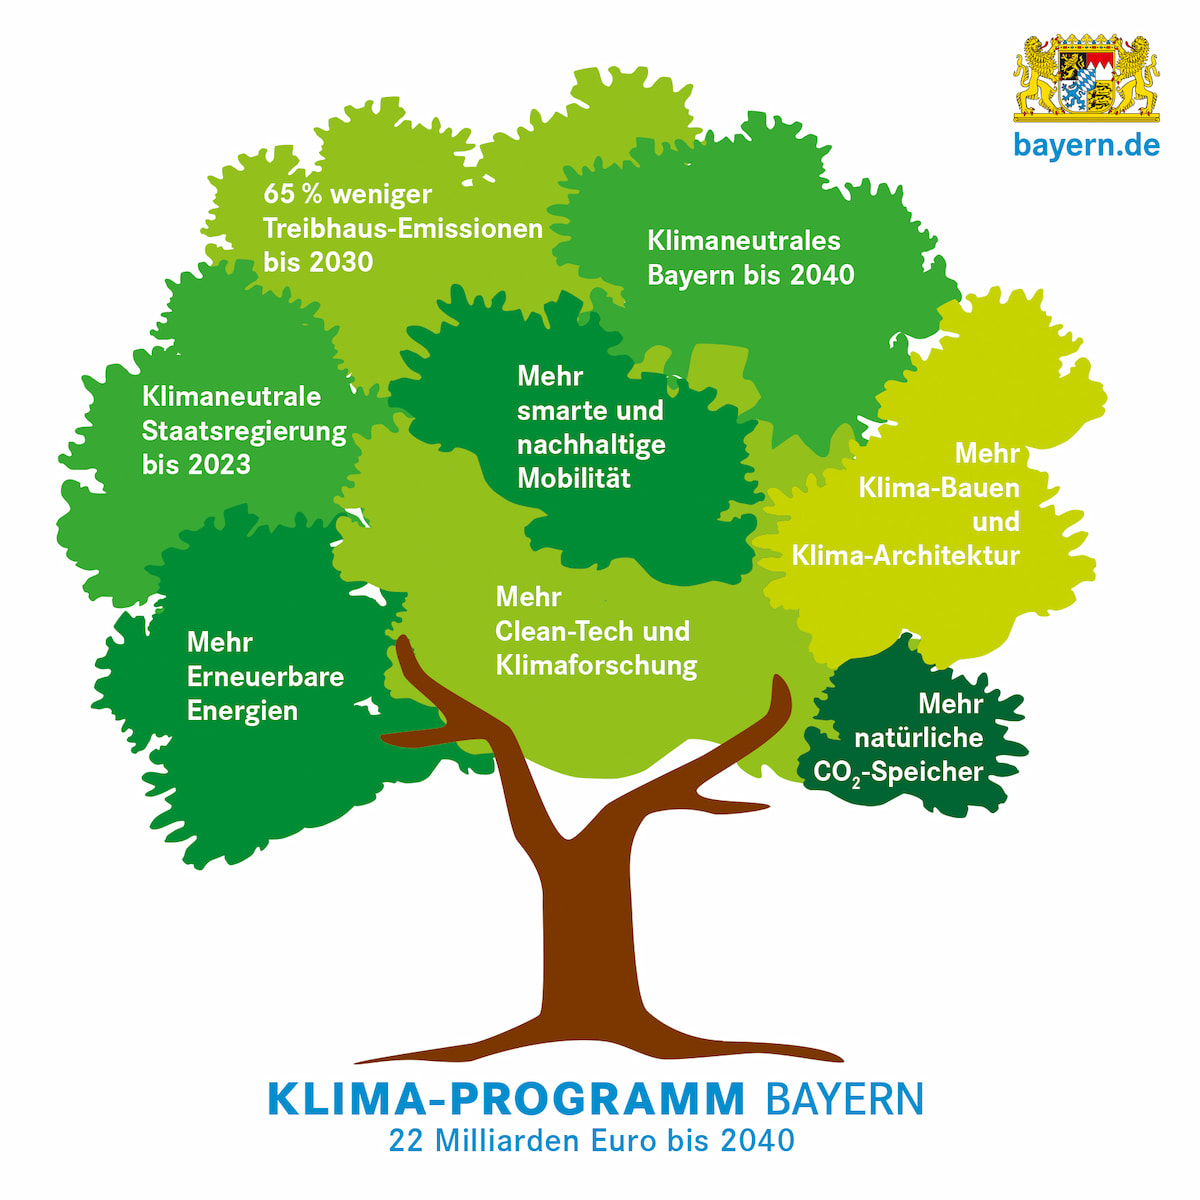 Grafik: In einer Baumkrone werden die zentralen Maßnahmen des Klimaprogramms Bayern dargestellt